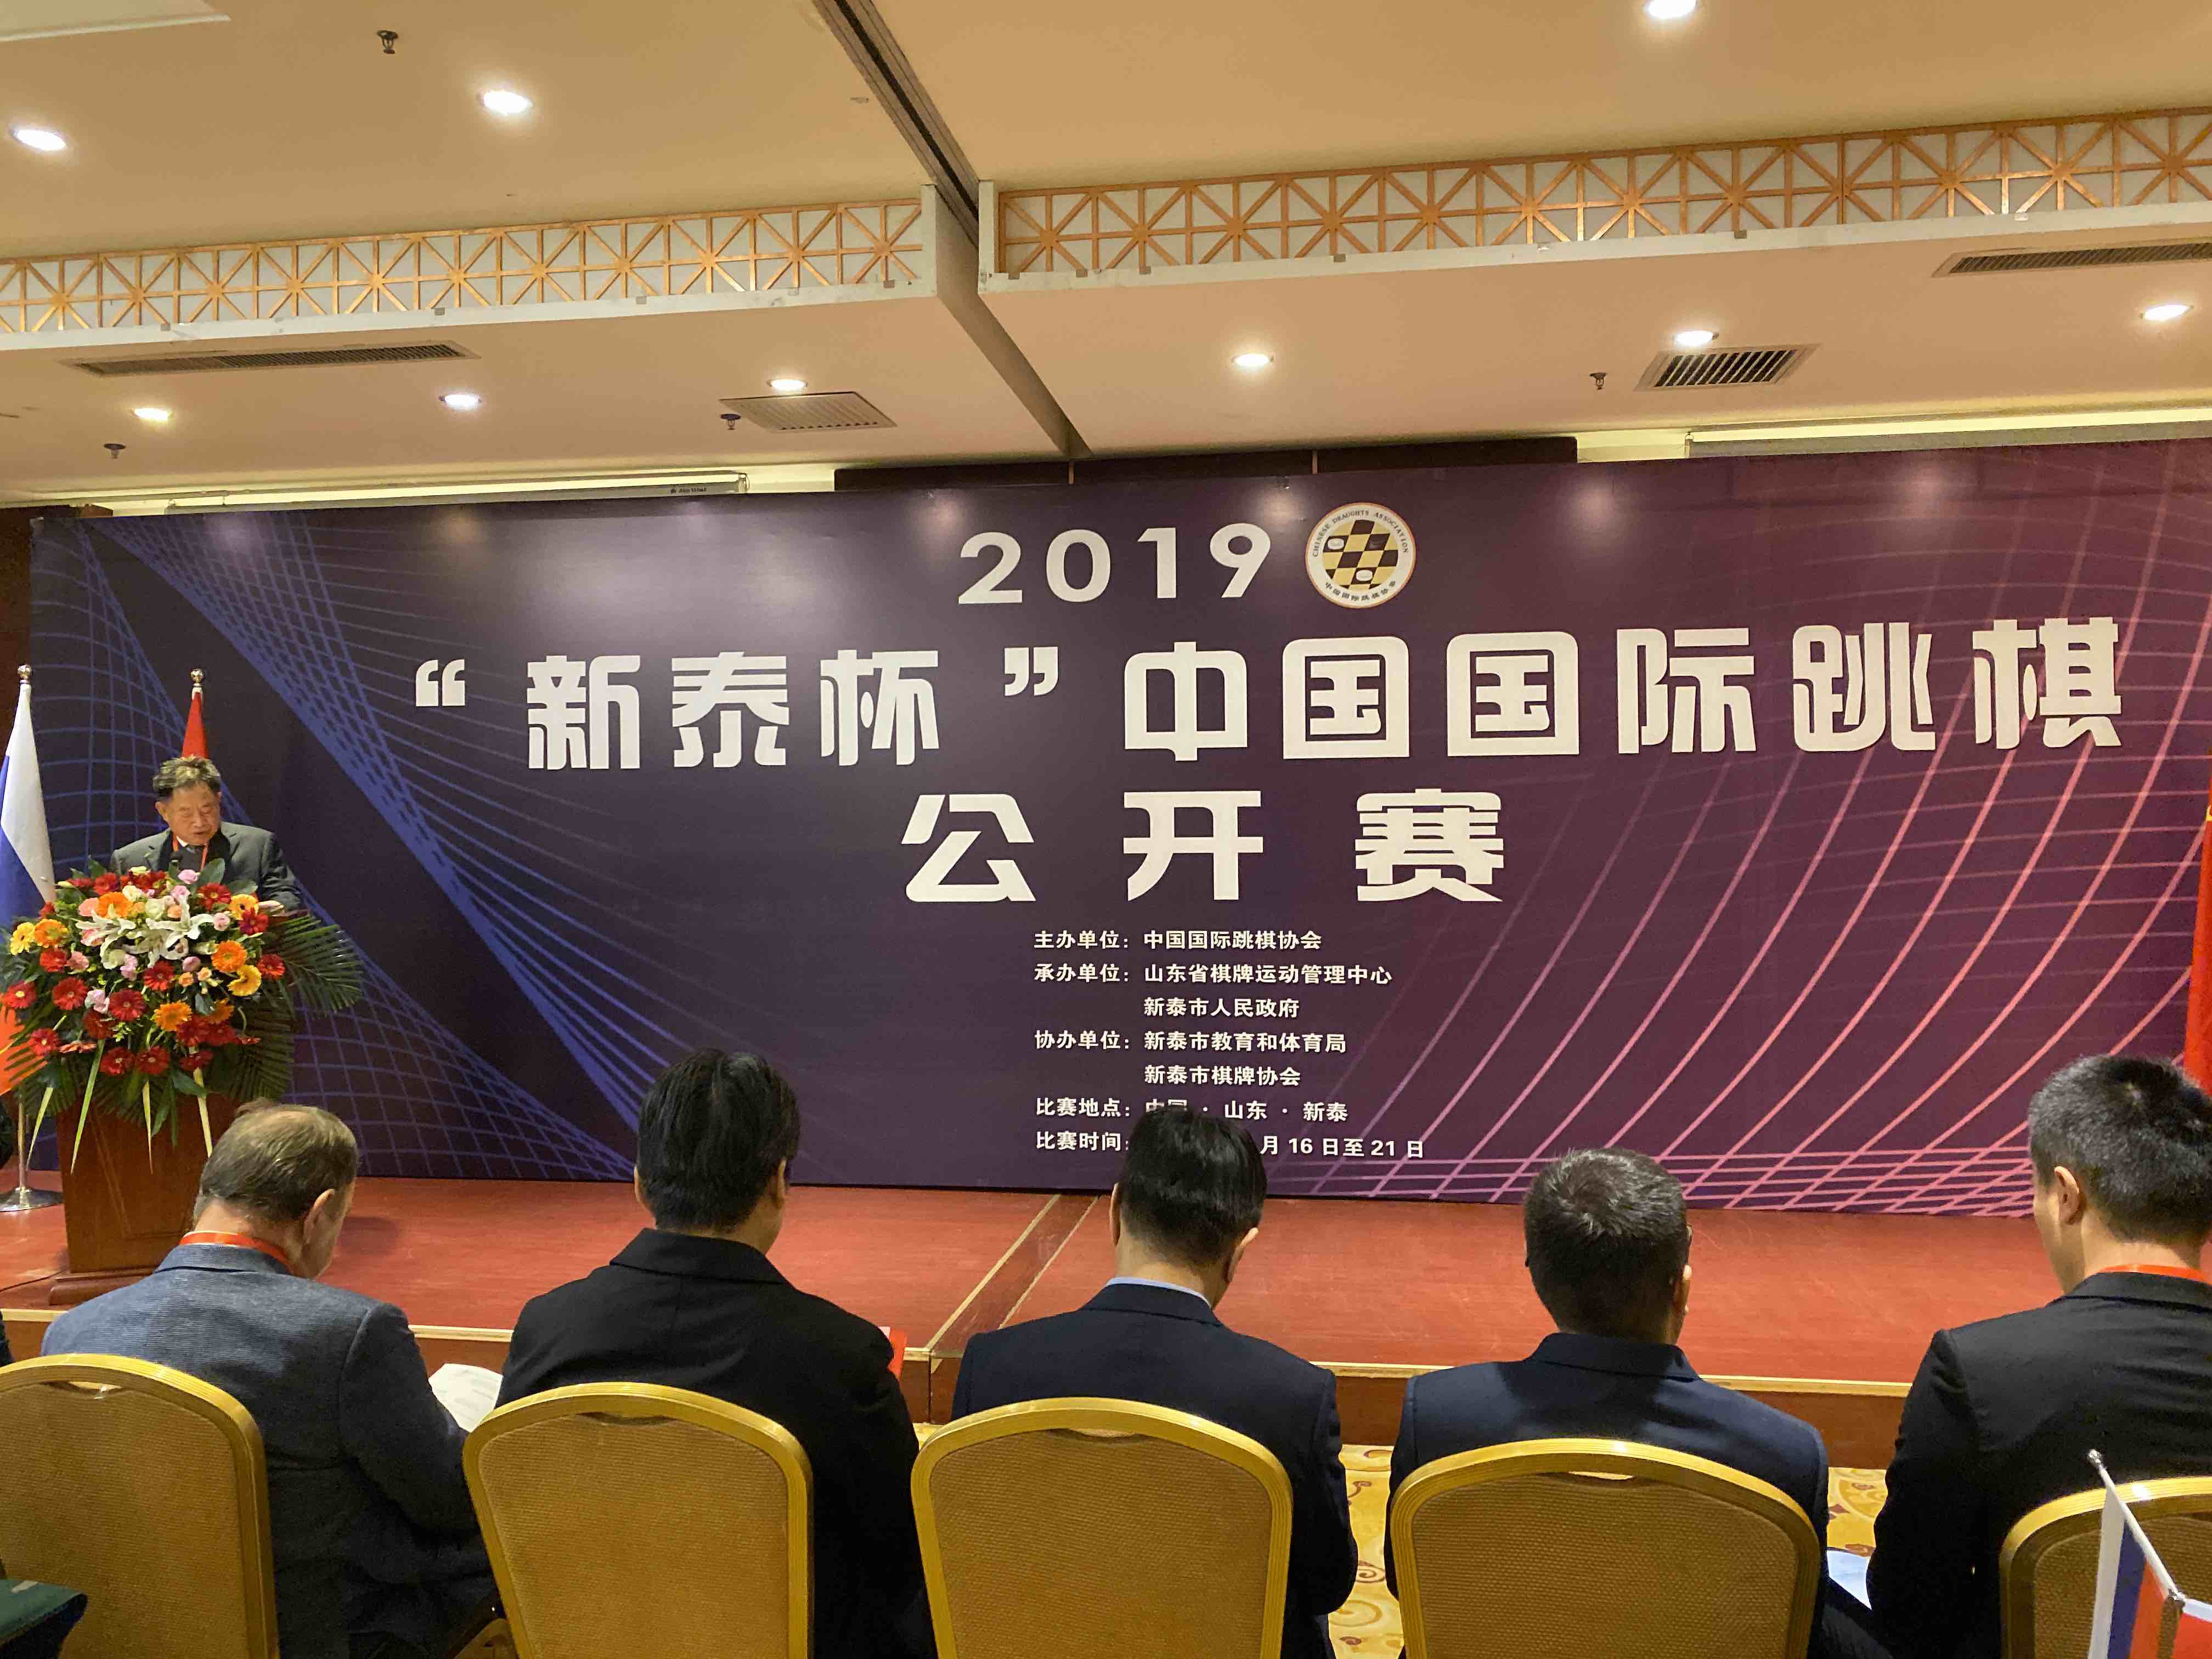 跳棋也有国际比赛 2019“新泰杯”中国国际跳棋公开赛举行